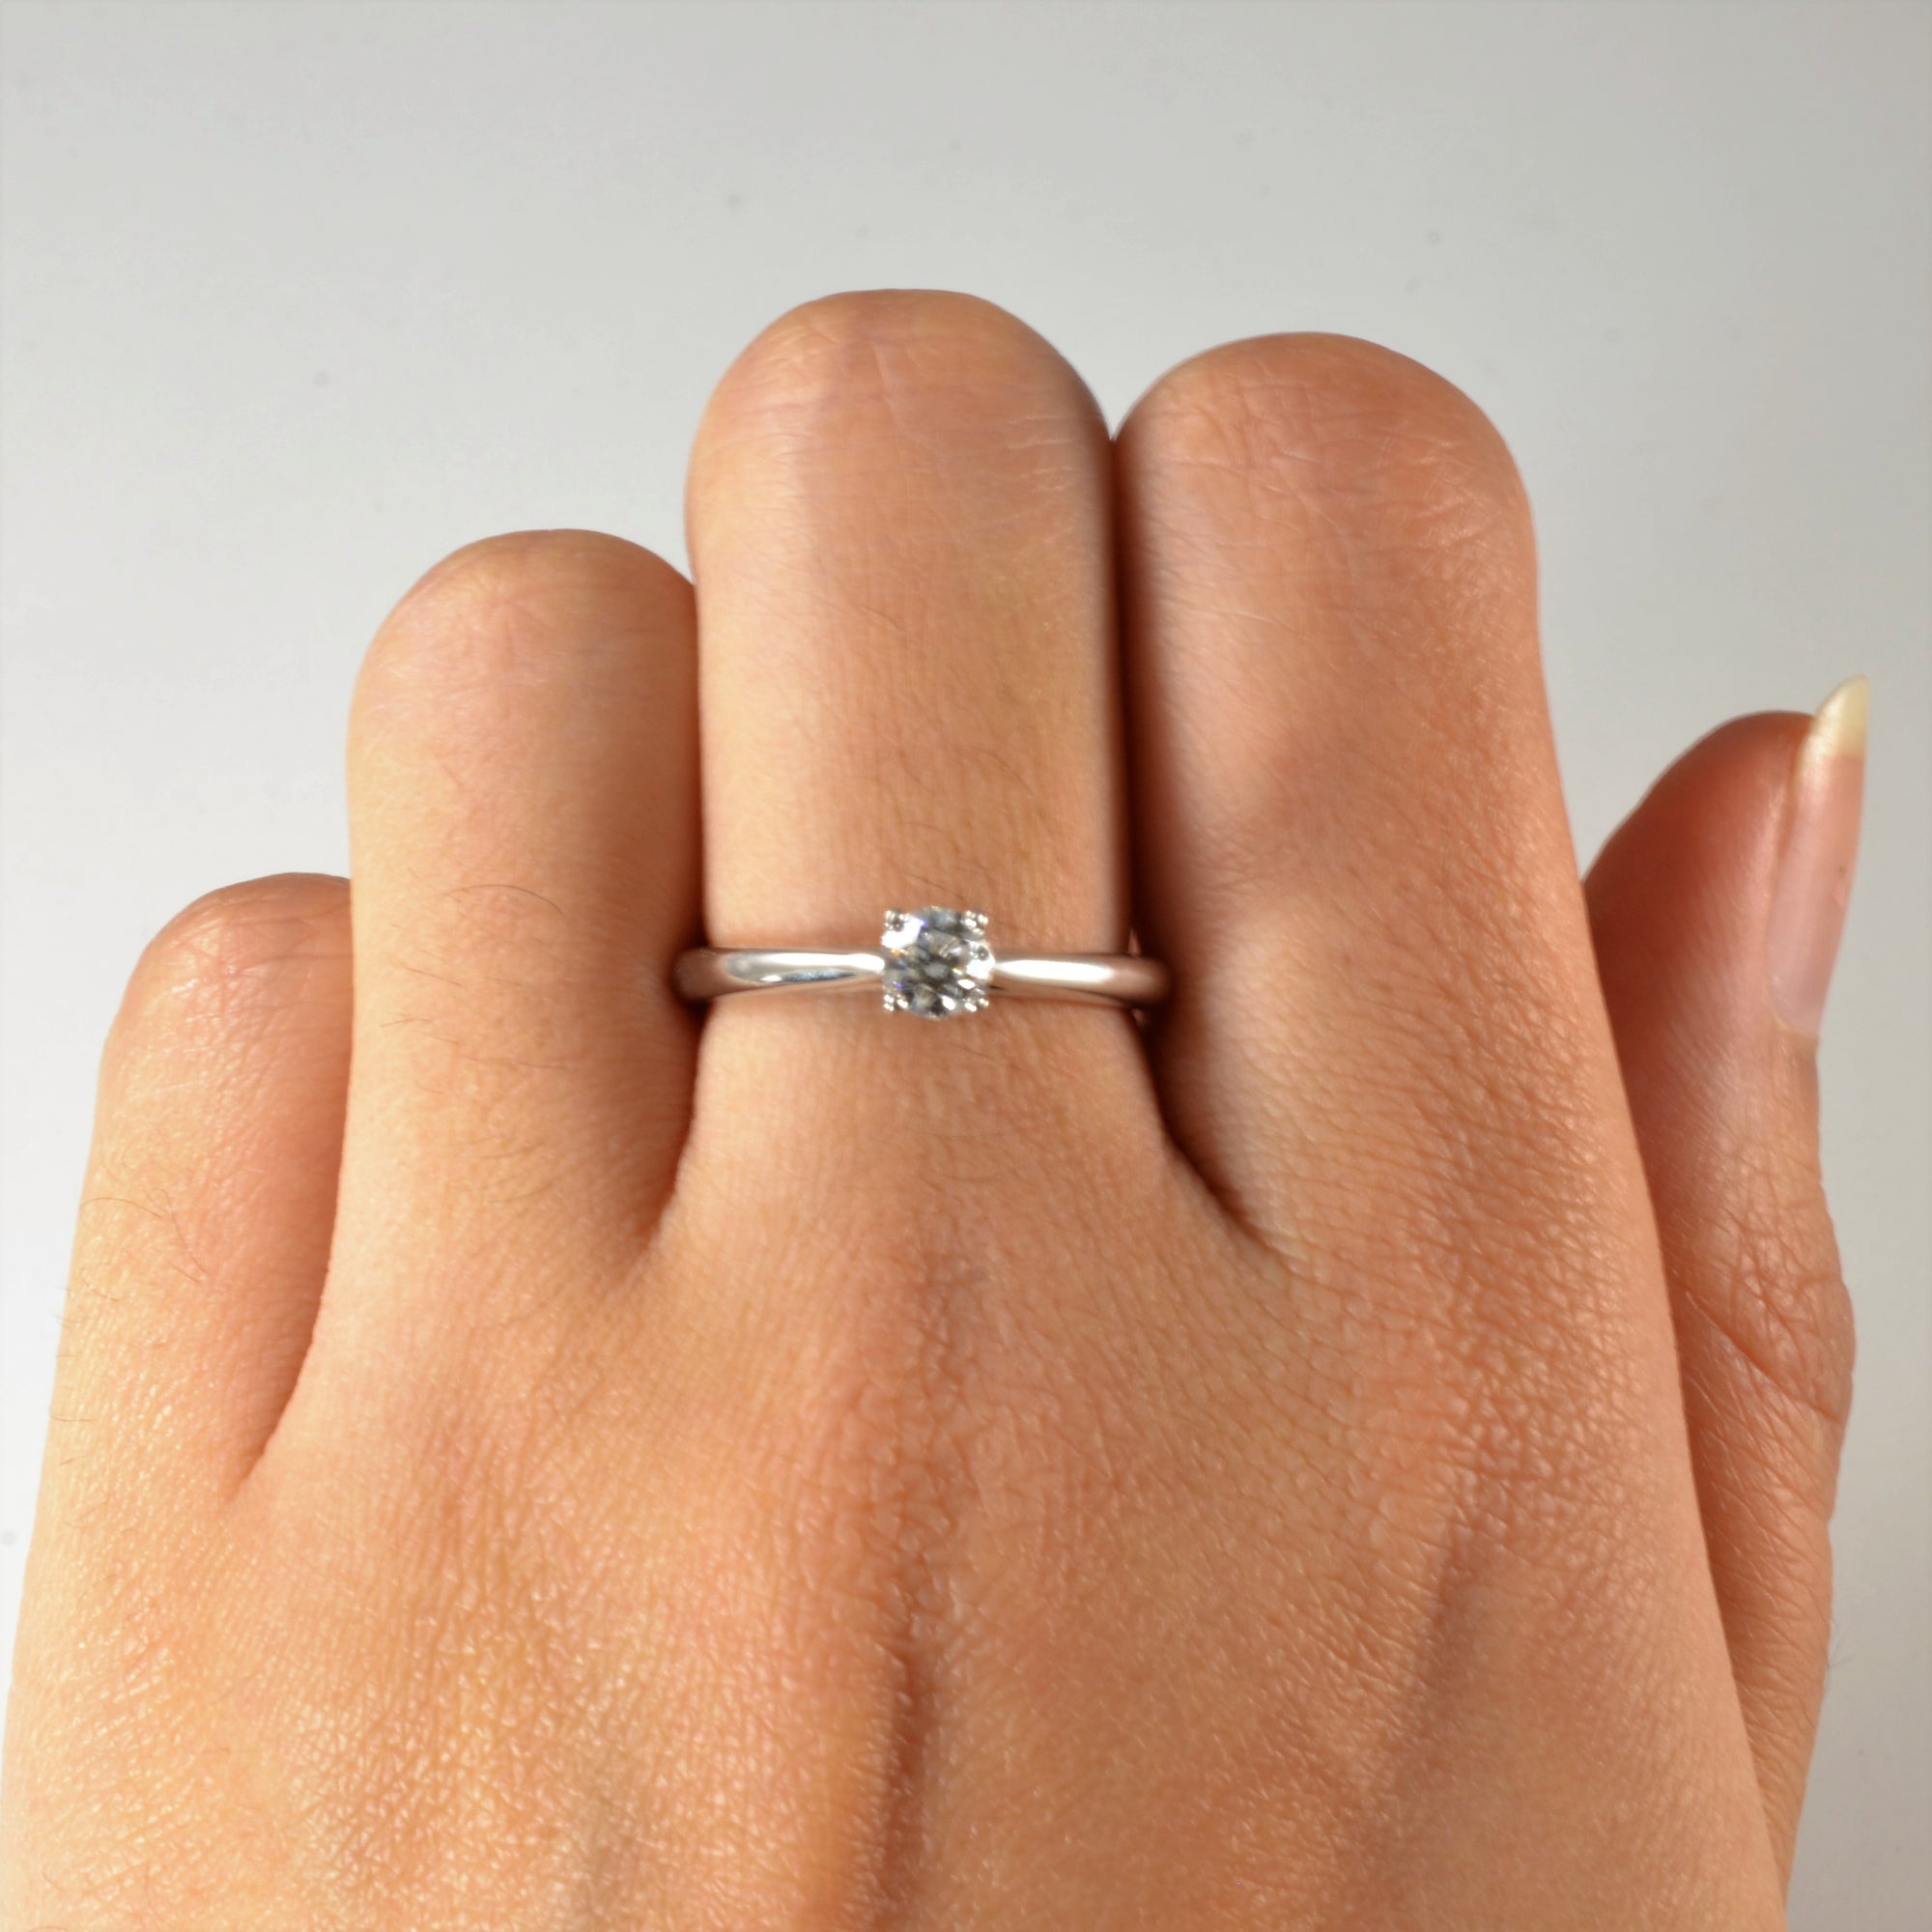 Birks' Solitaire Diamond Engagement Ring | 0.33ctw | SZ 6.5 |